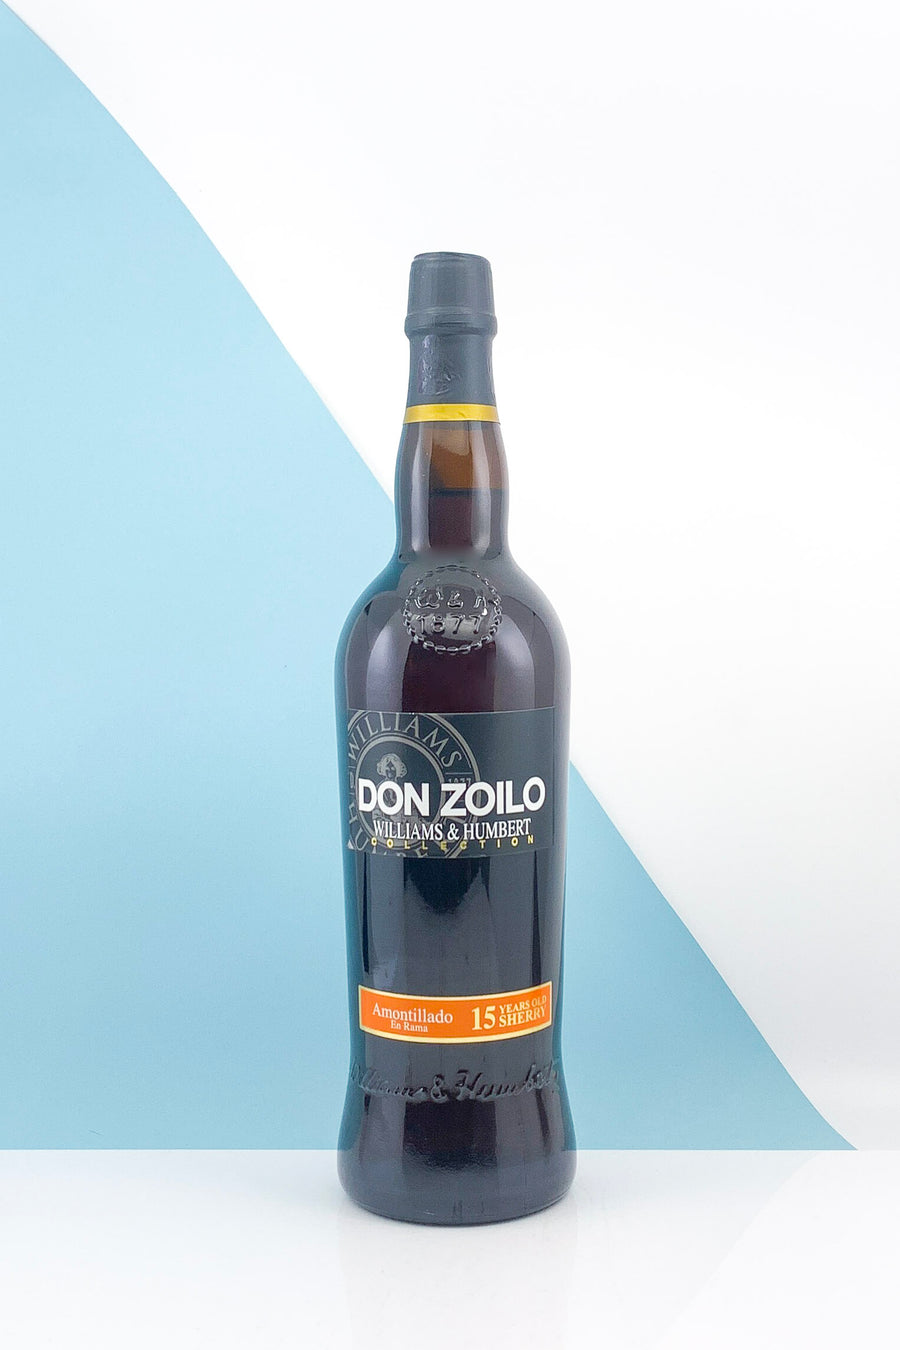 Bodegas Don Zoilo Amontillado 15 Years Old Sherry